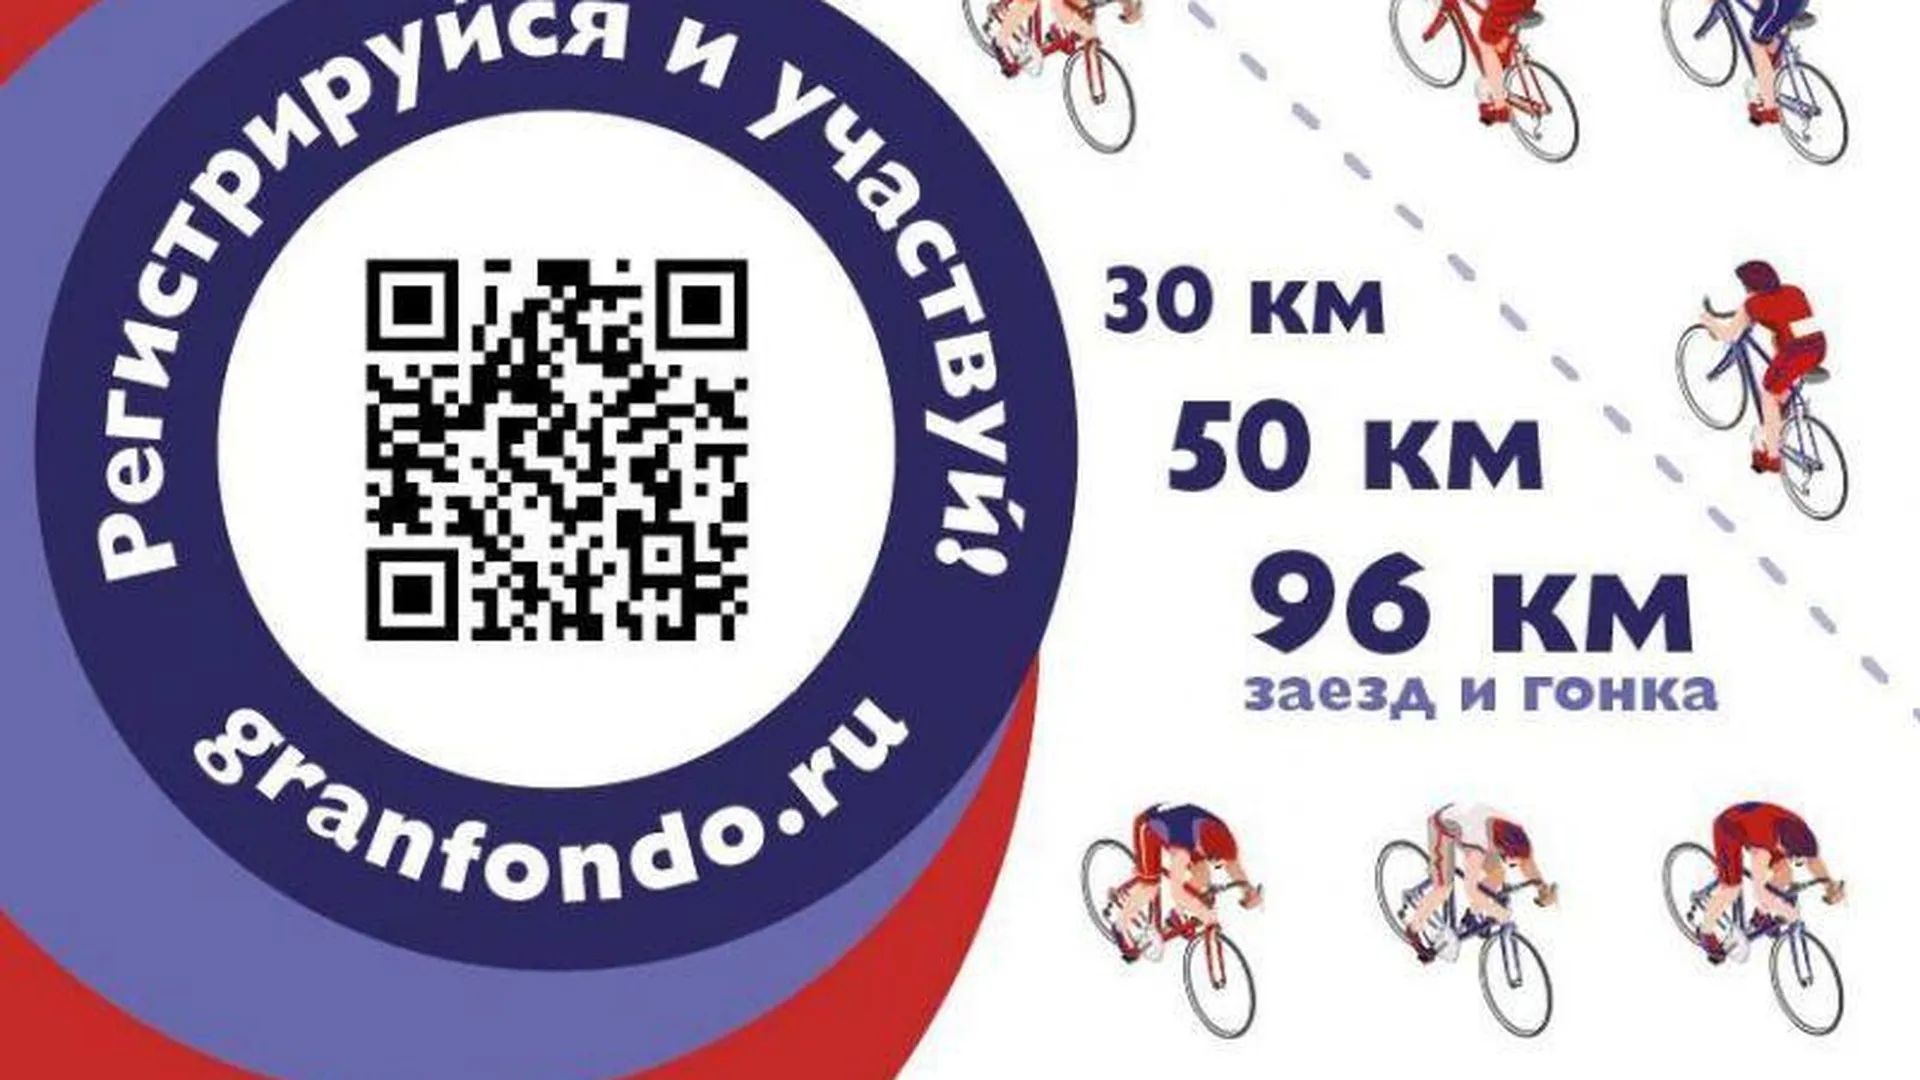 Жителей региона пригласили на велогонку Grand Fondo